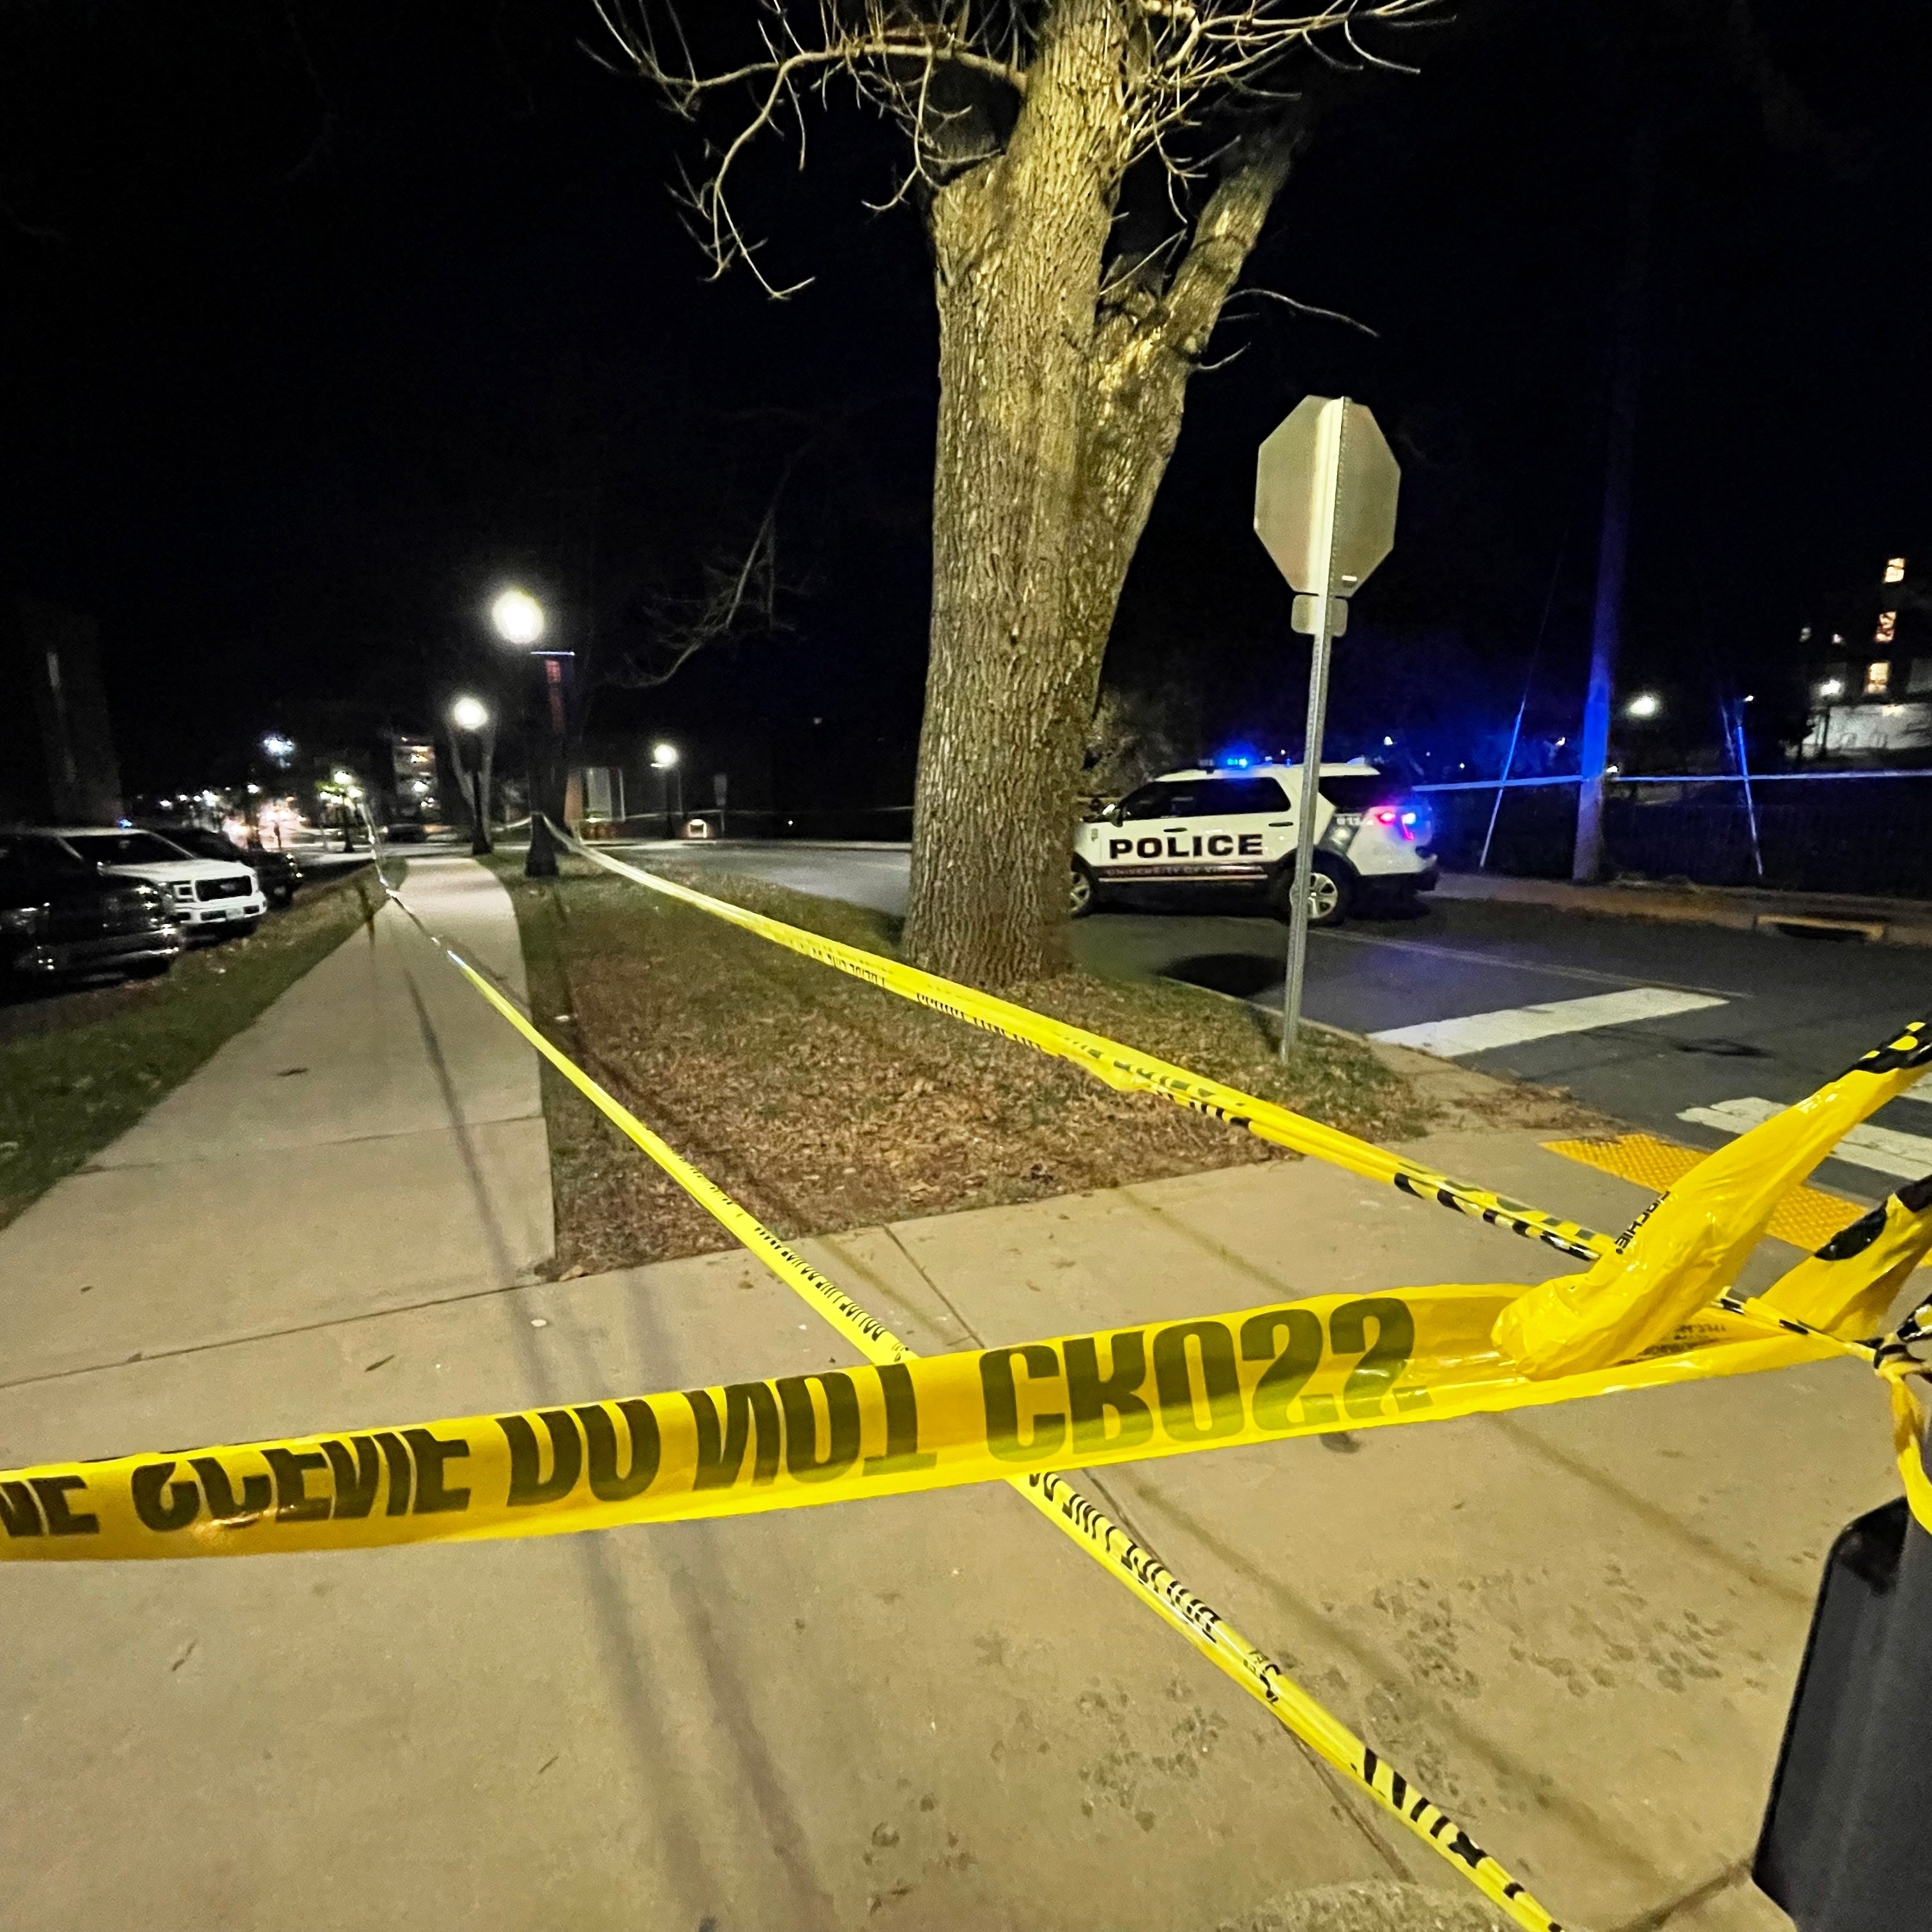 Alunos de universidade nos EUA são encontrados mortos e polícia fala em  'crime passional